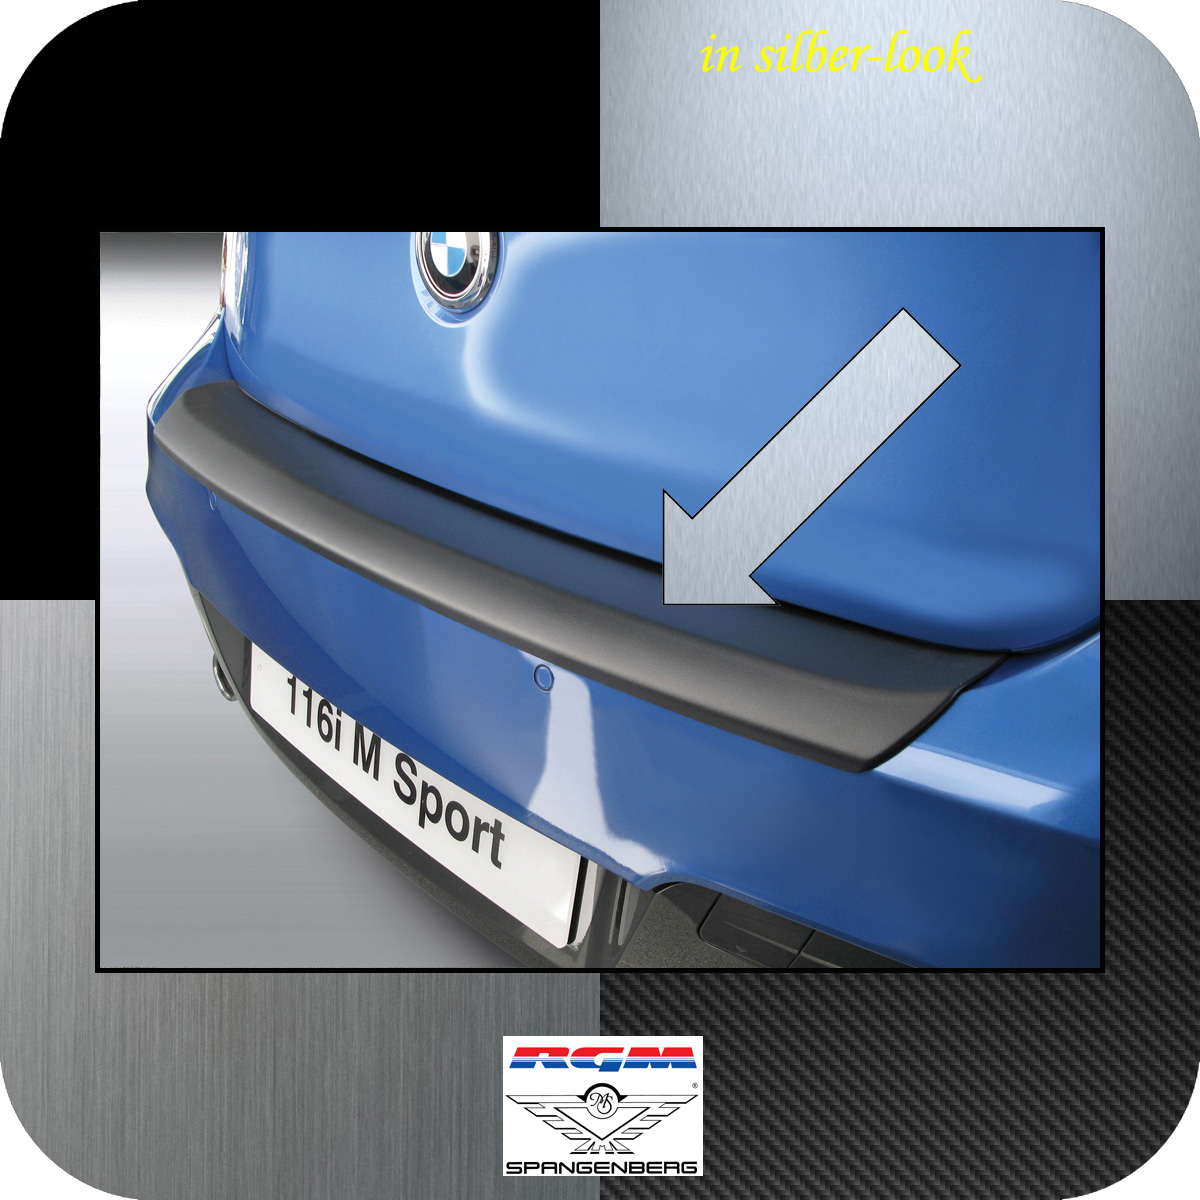 Ladekantenschutz Silber-Look BMW 1er F21 F20 M-Style vor Mopf 2011-2015 3506618